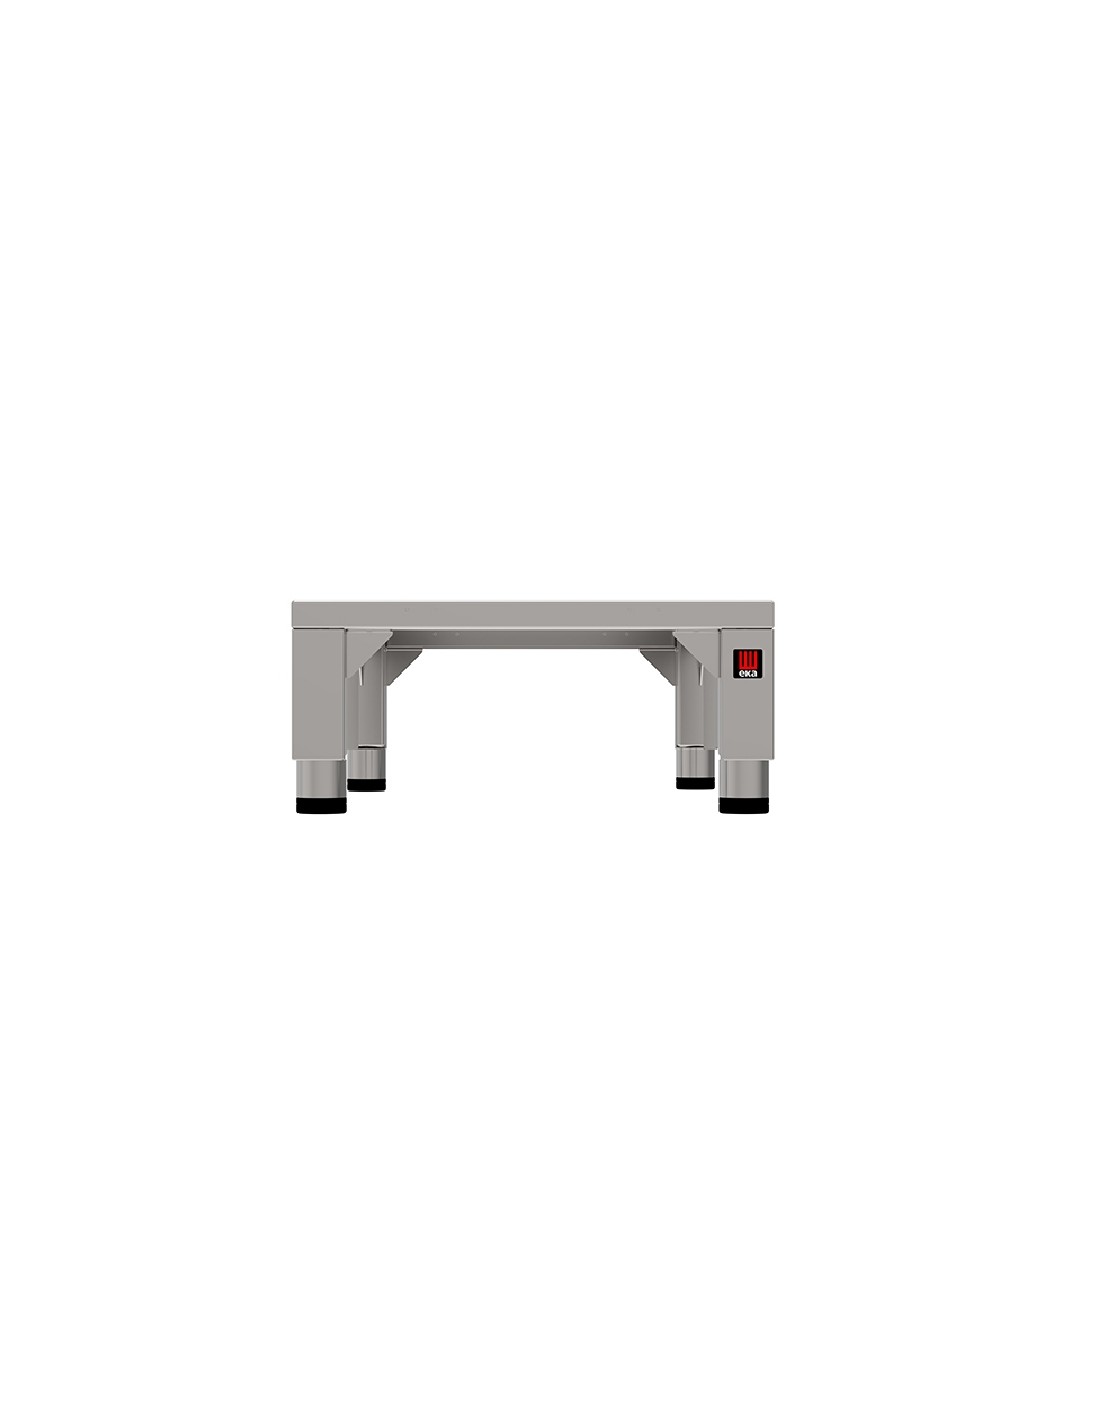 Tavolo fisso - Acciaio inox AISI 430 - Per sovrapposizione forni - Per forni 6teglie compatti - Dimensioni cm 50 x 73.6 x22h